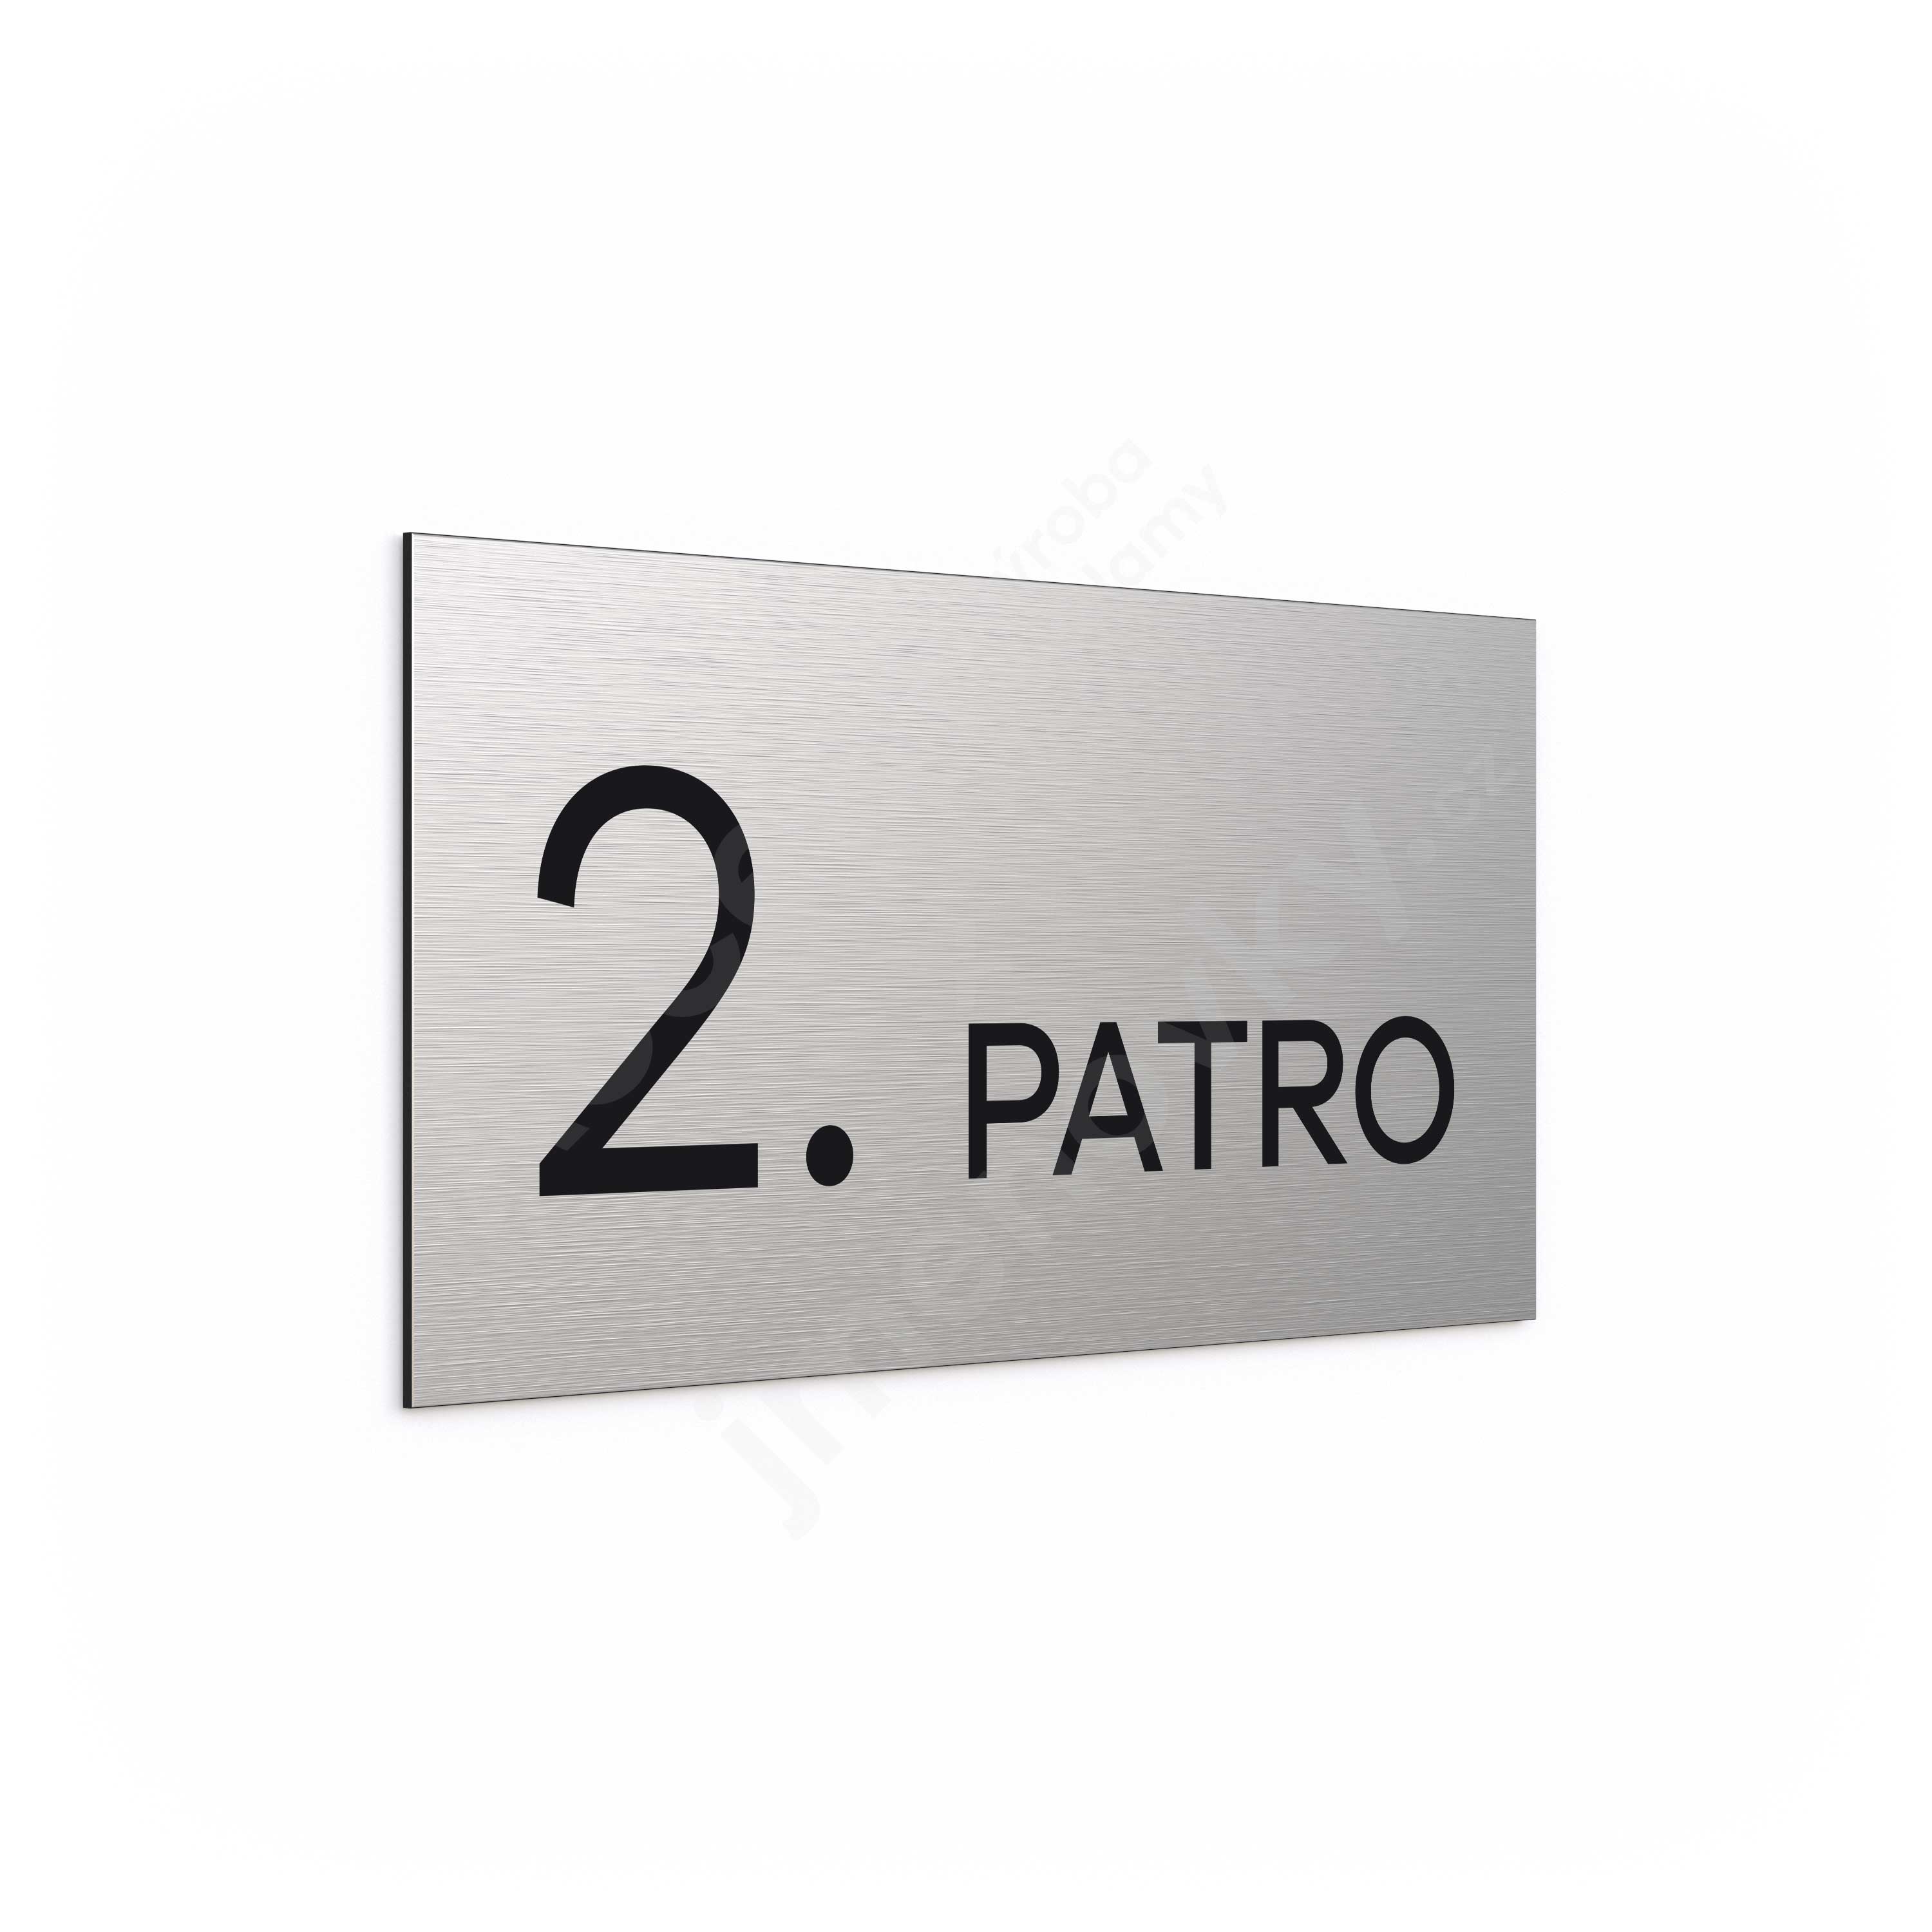 Oznaen podla "2. PATRO" (300 x 150 mm)